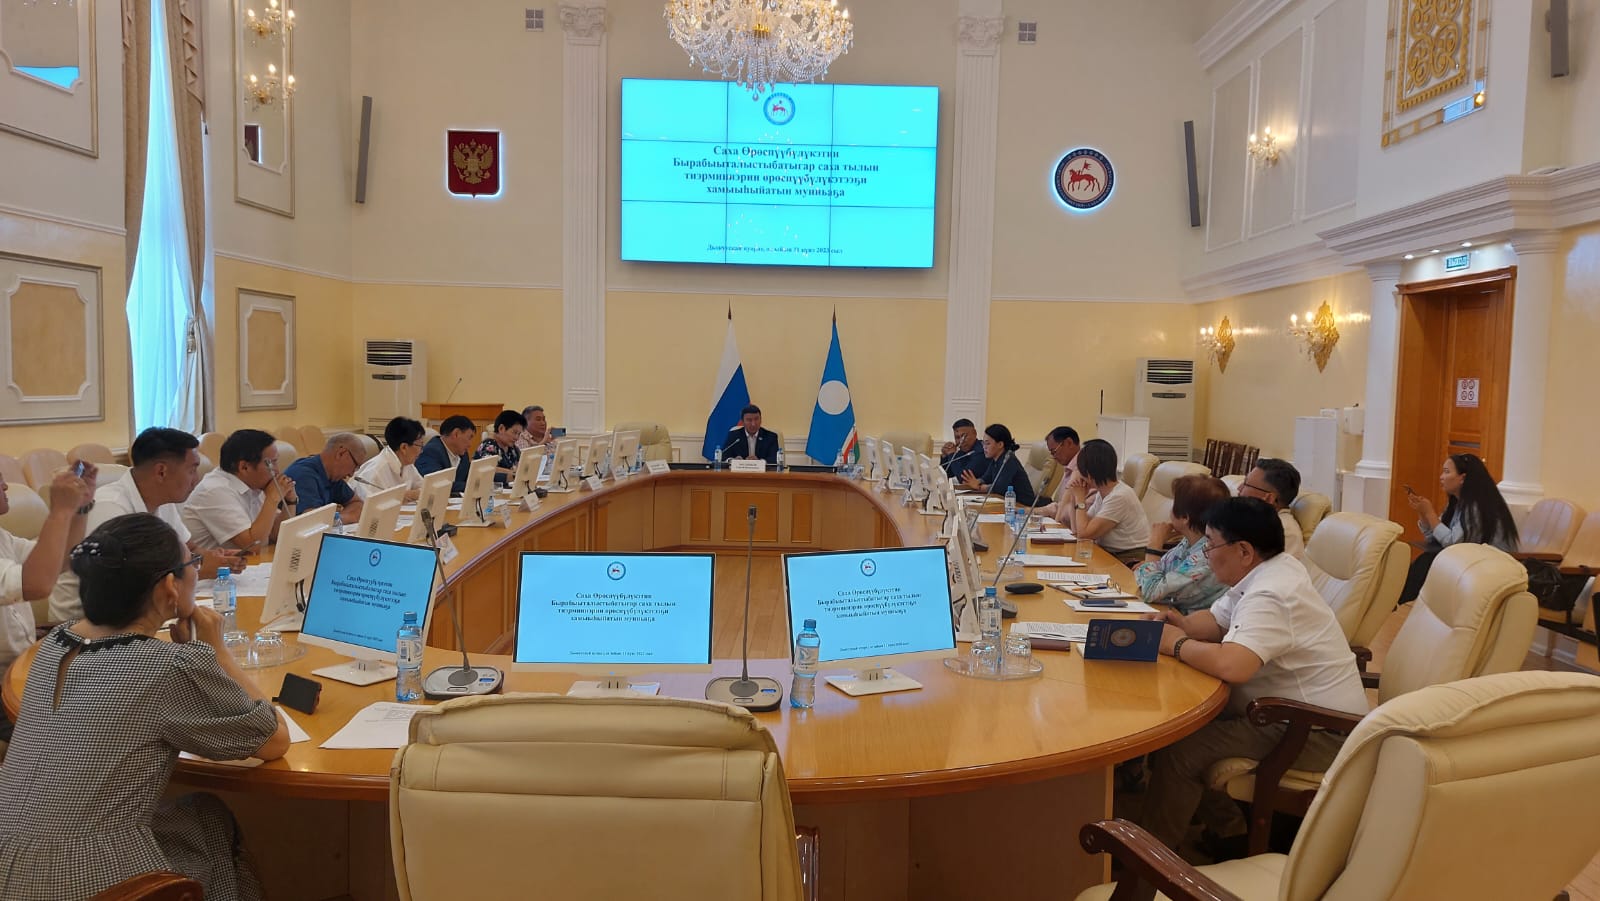 Первое заседание комиссии по терминологии языка прошло в Якутске